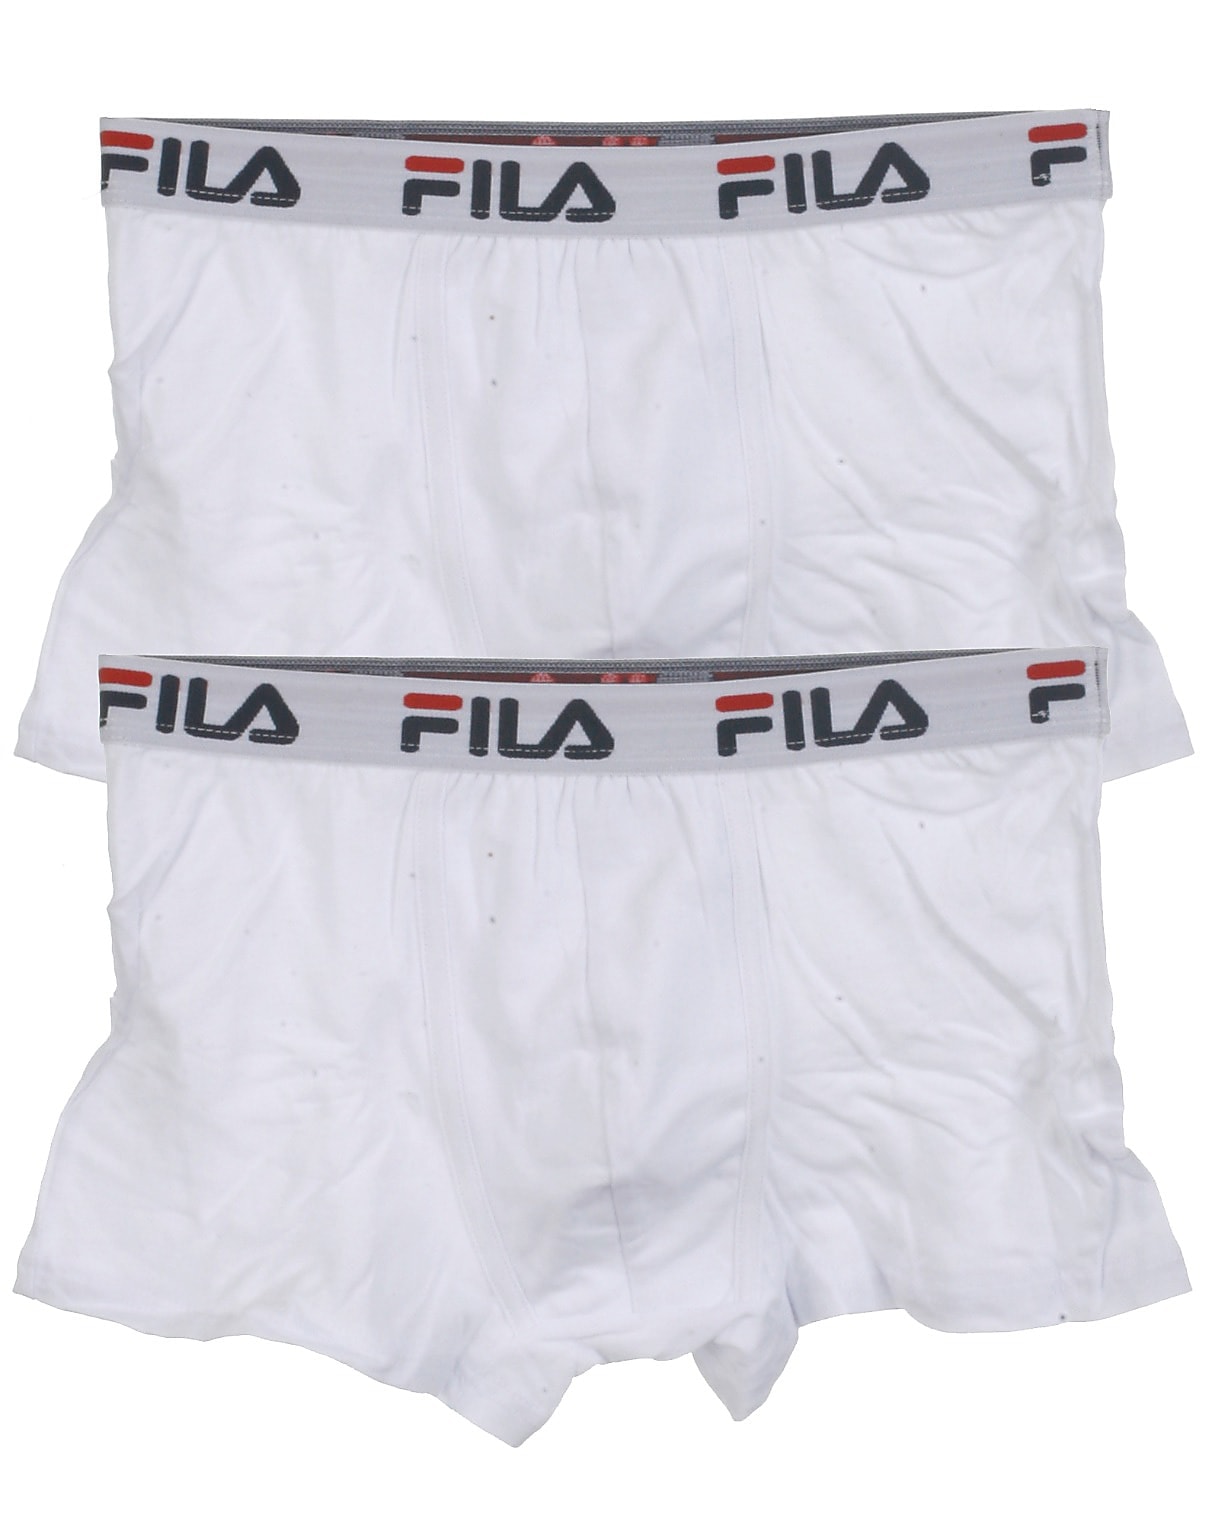 intellektuel dyr Niende Fila 2-pak tights , Boxer , hvid. Find alt slags undertøj og nattøj her!